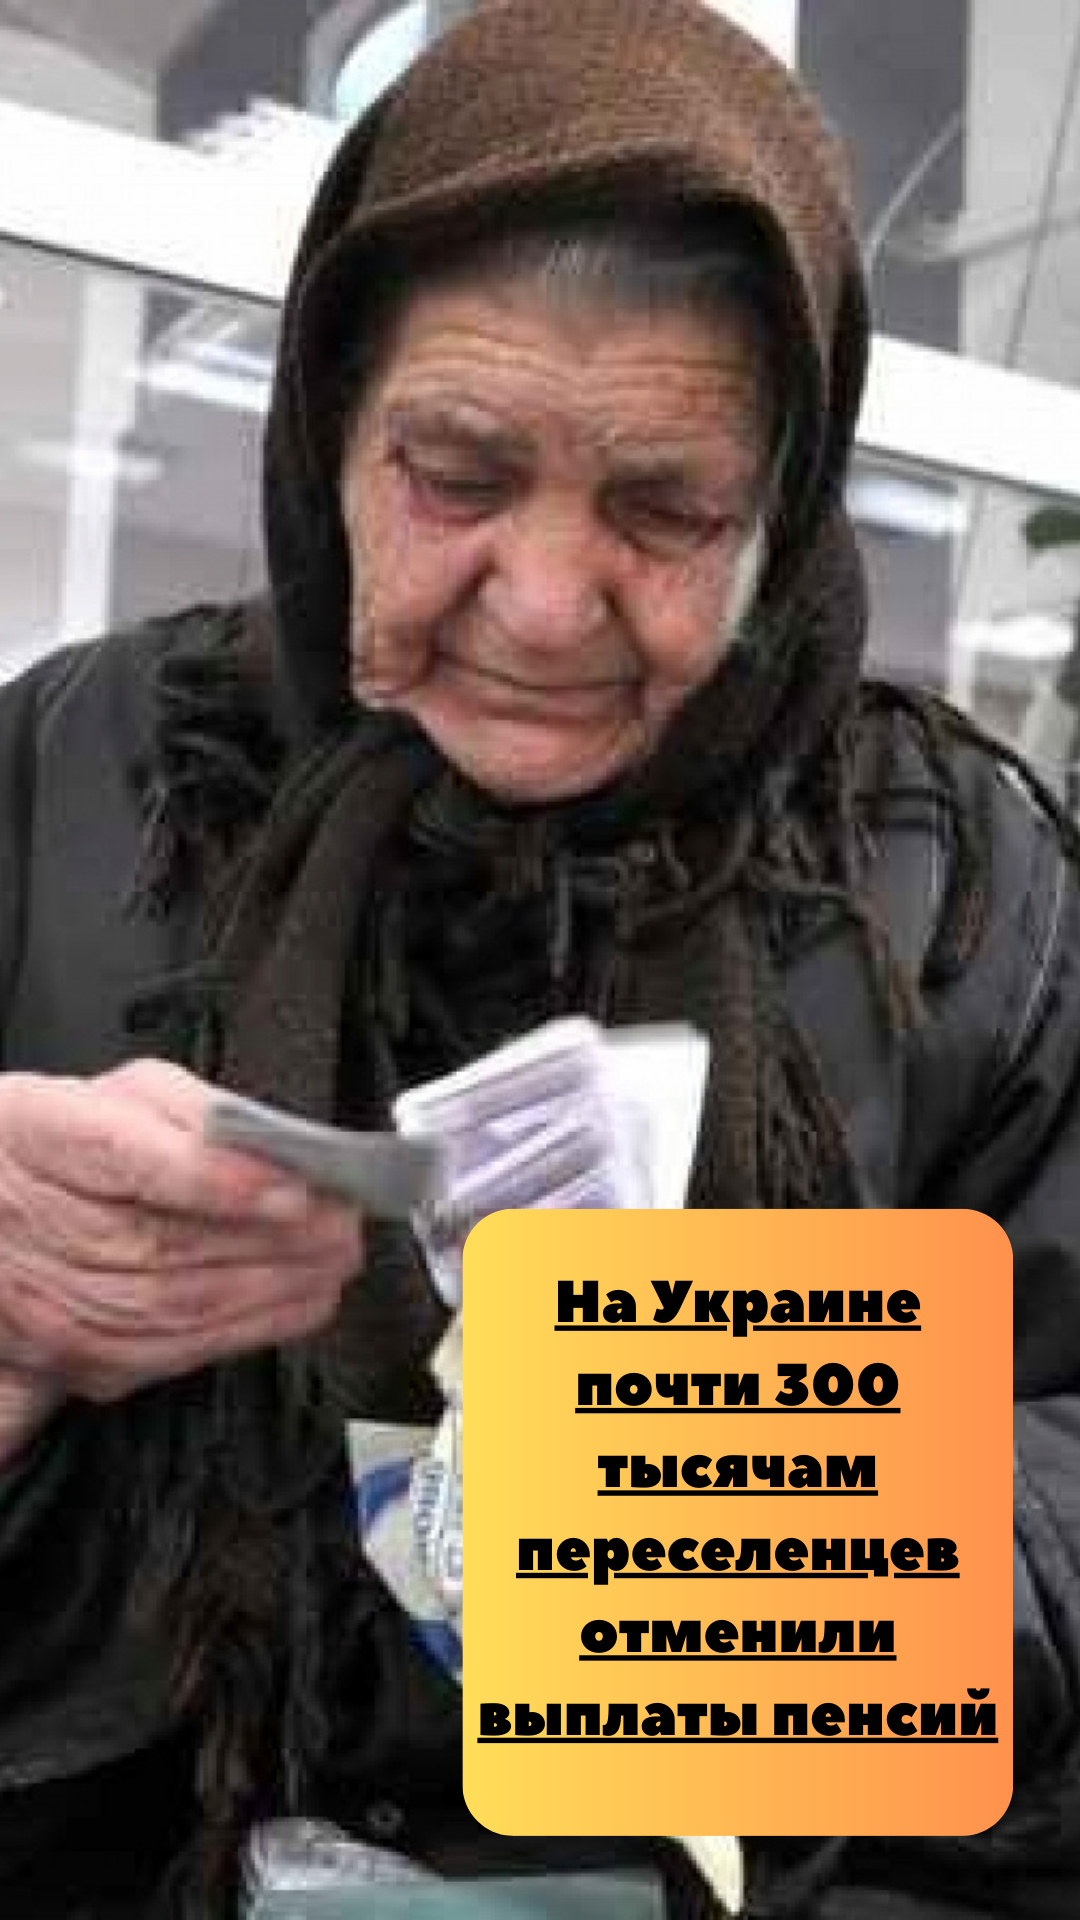 На Украине почти 300 тысячам переселенцев отменили выплаты пенсий #shorts